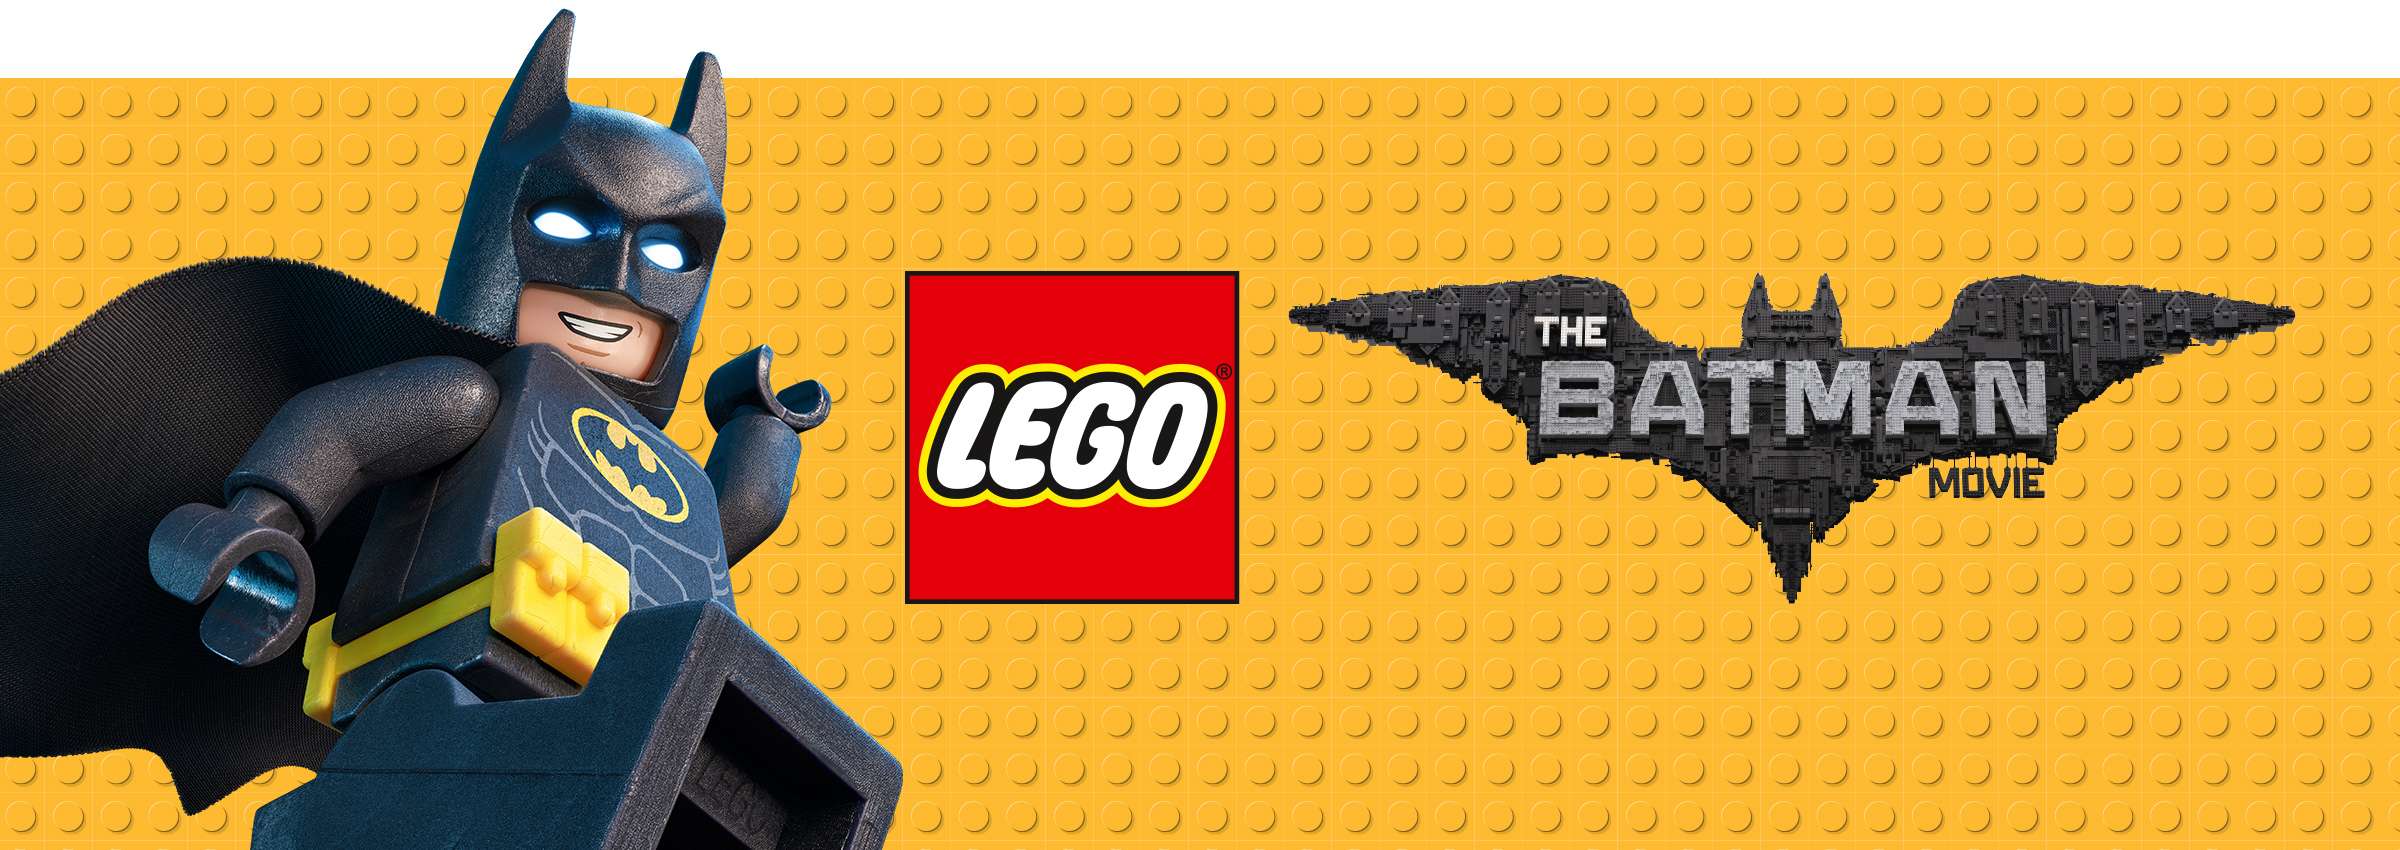 Lego batman movie Logos